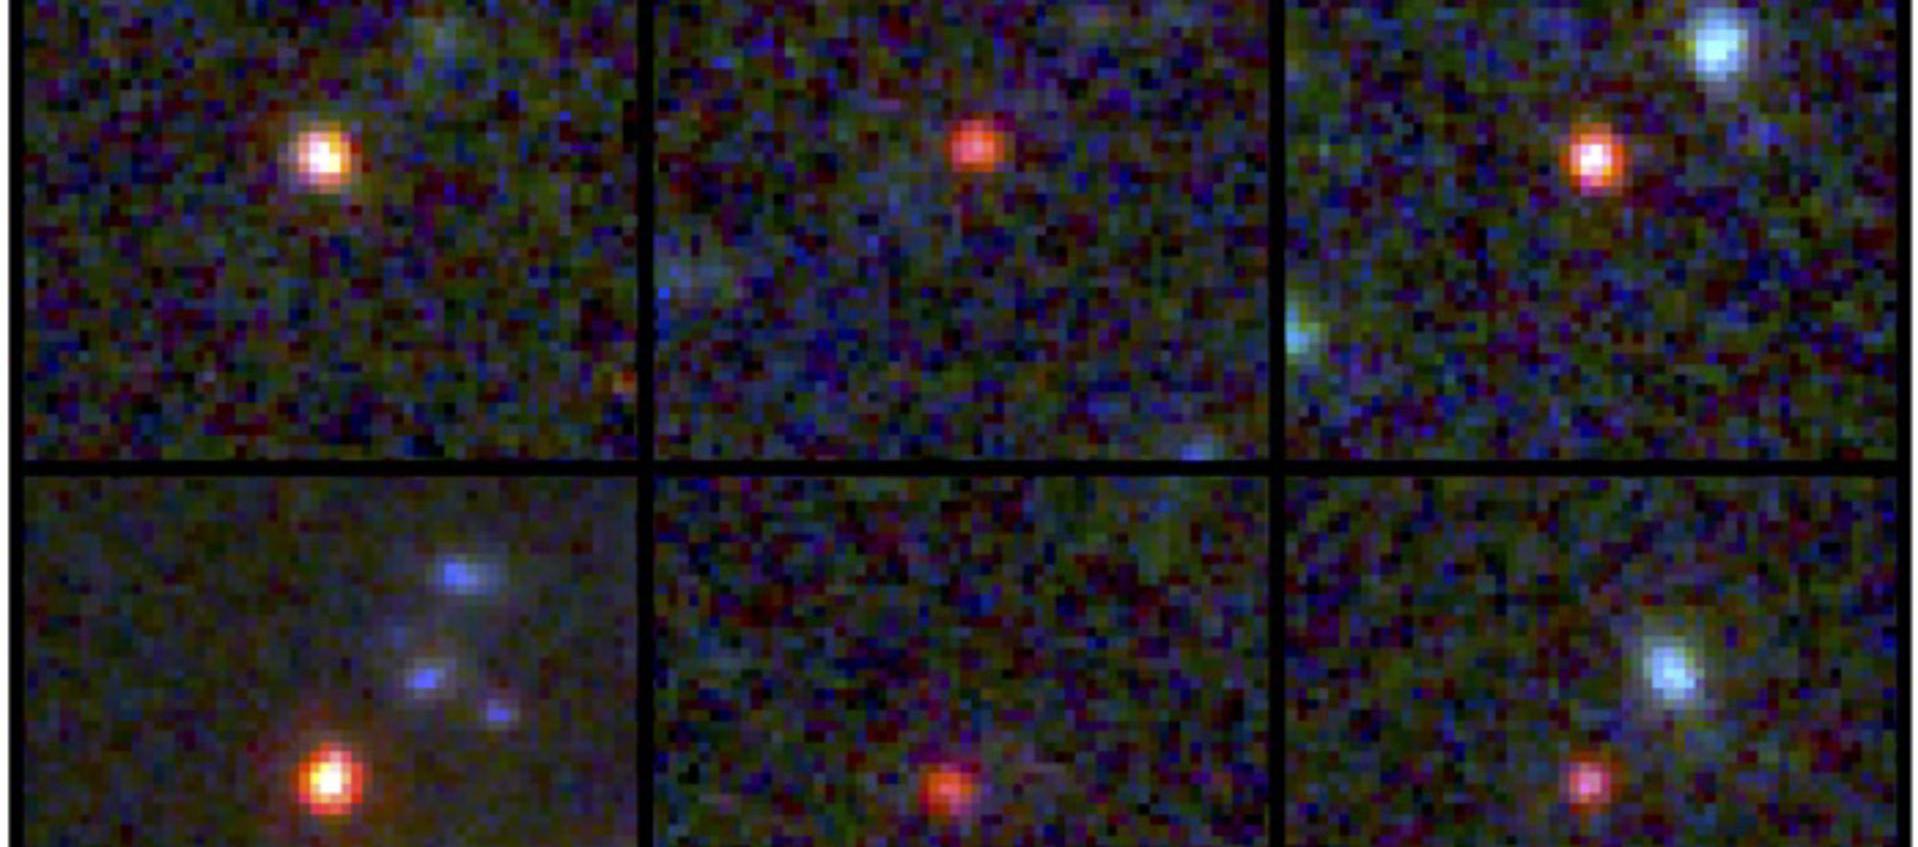 Imágenes de seis galaxias masivas vistas entre 500 y 800 millones de años después del Big Bang